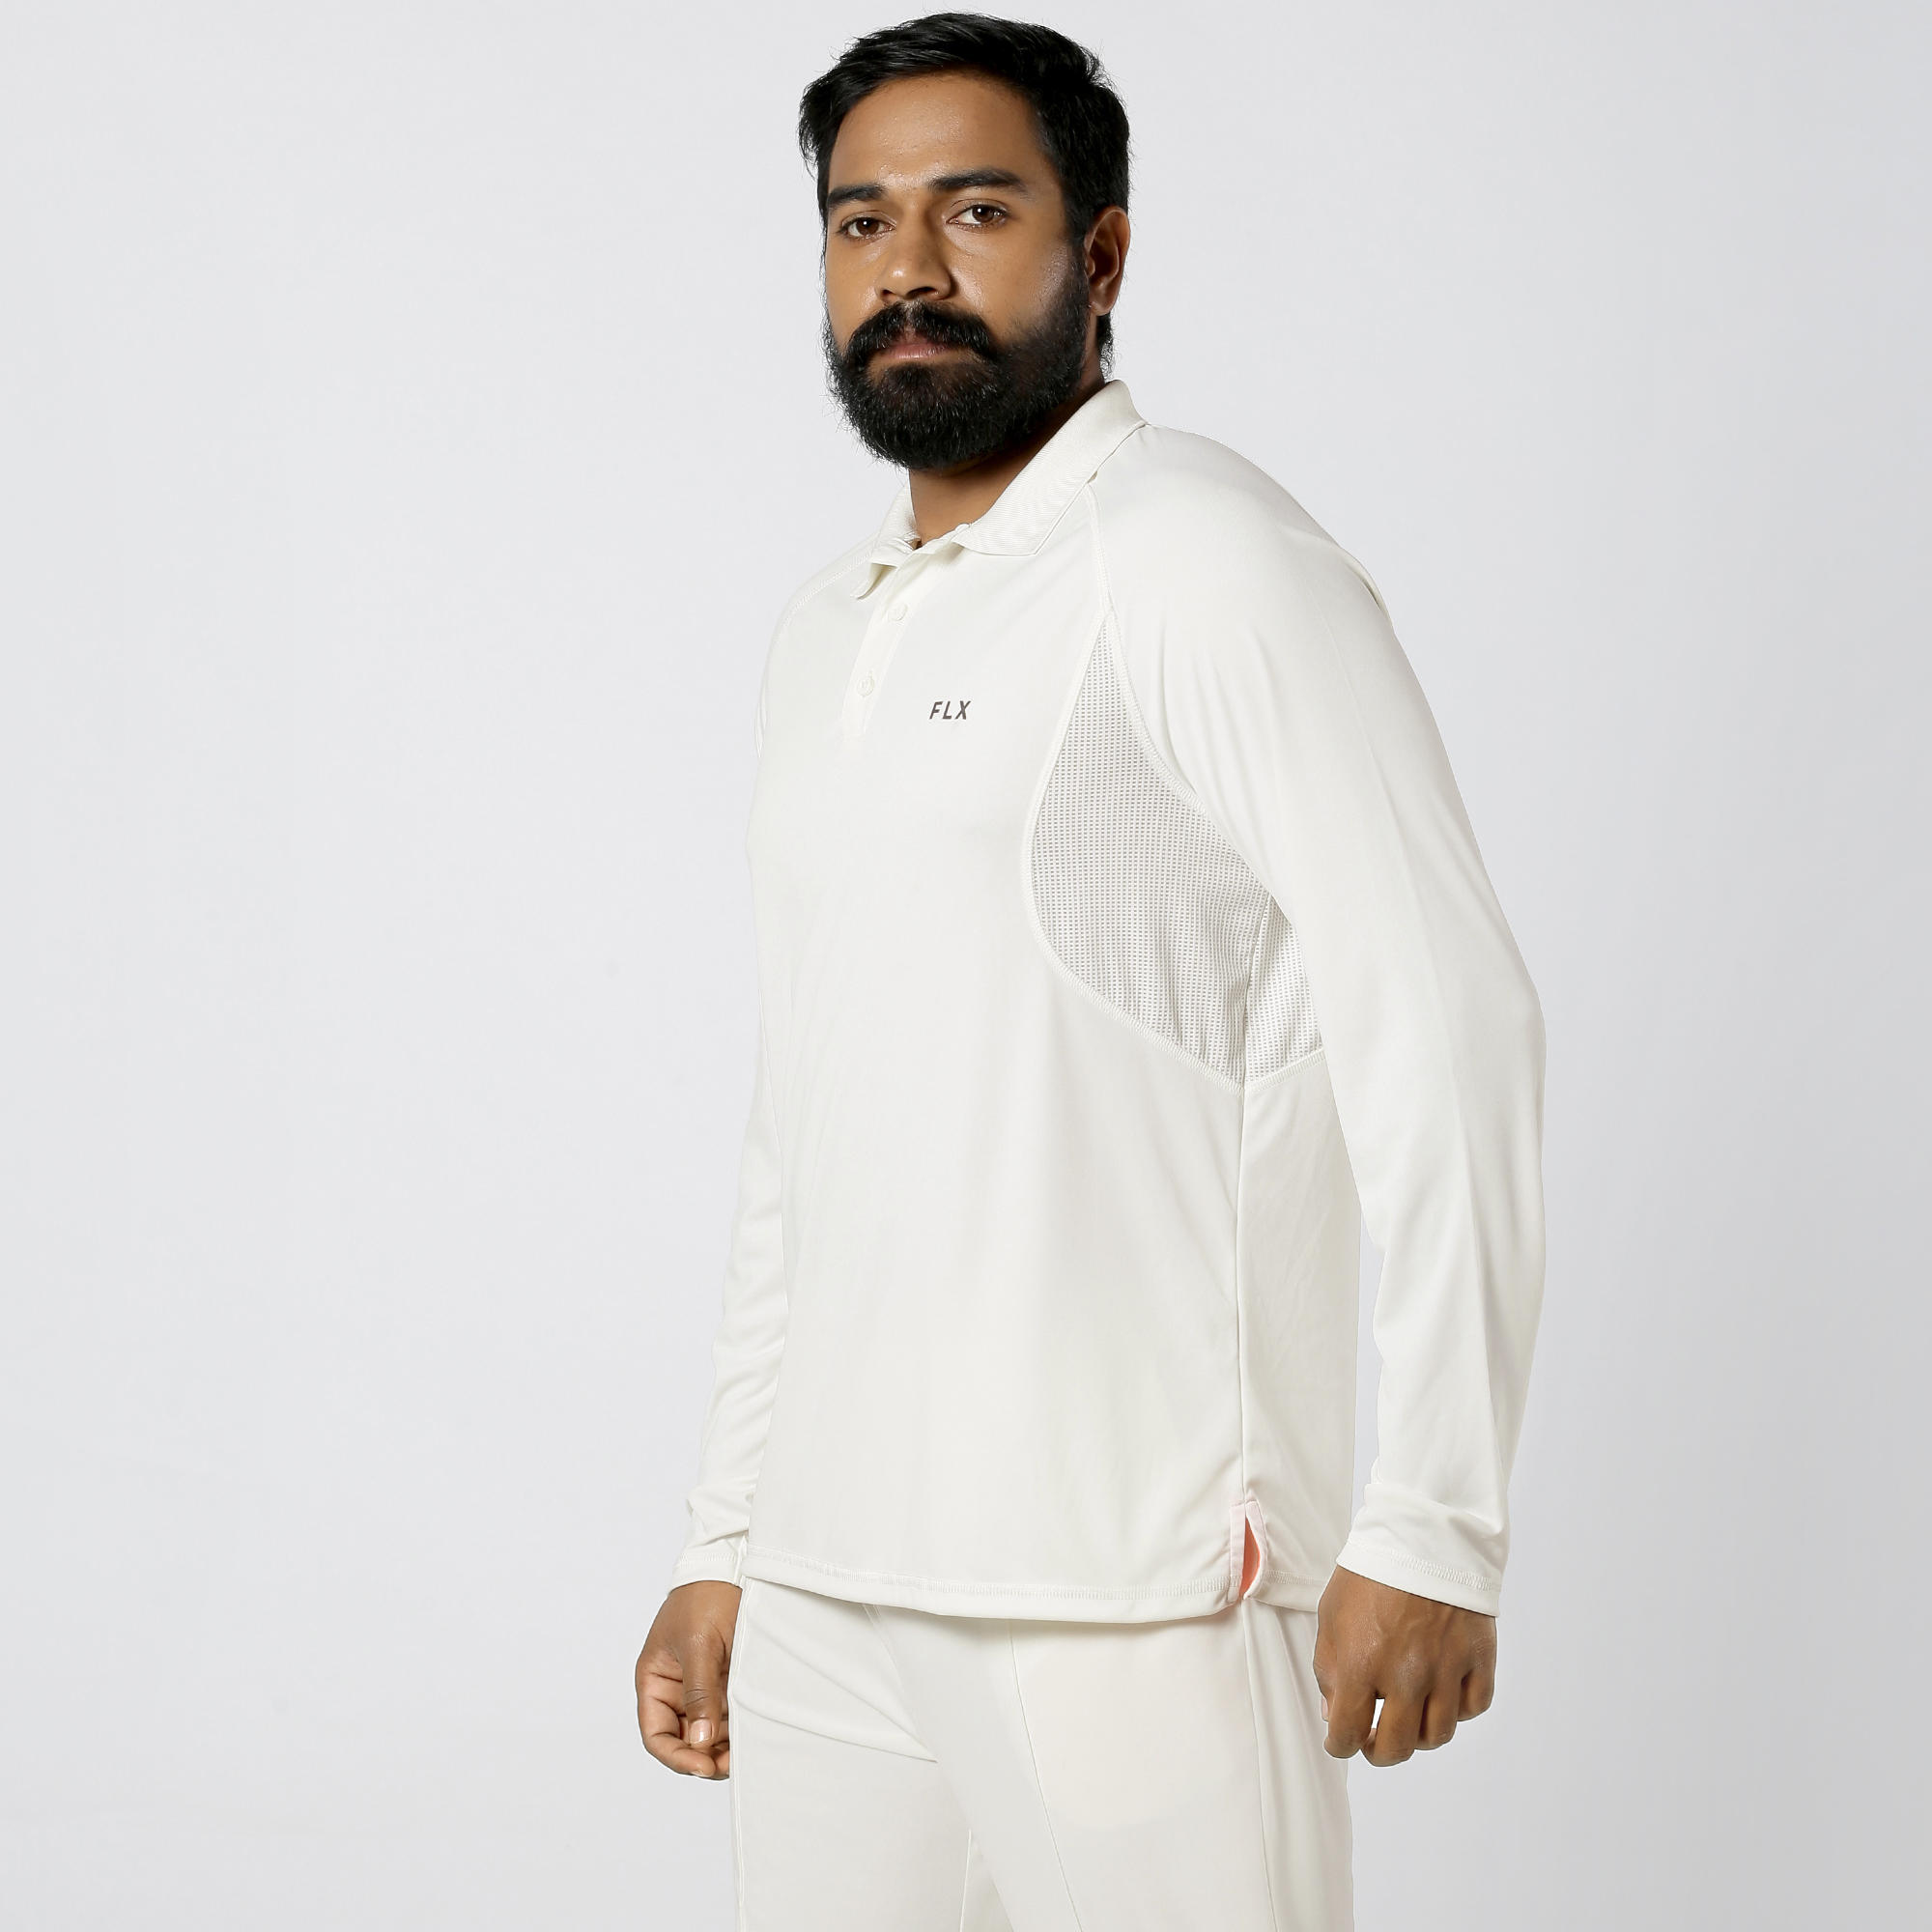 white cricket jersey online